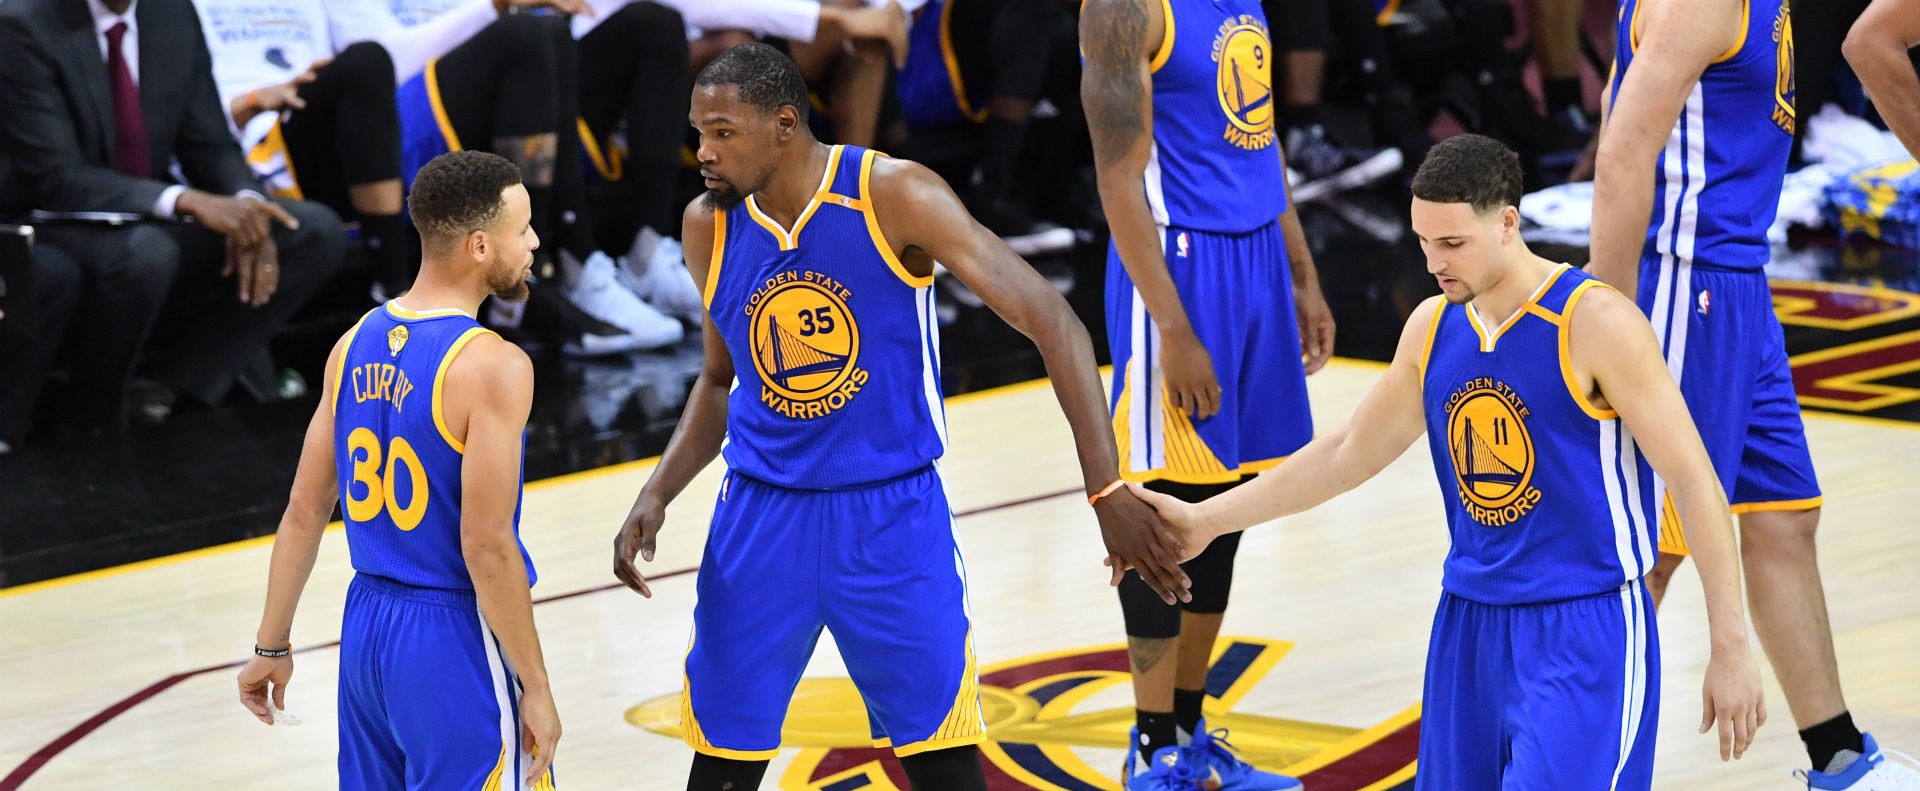 Les Warriors osnt invaincus cette saison quand le trio Curry-Thompson-Durant marque plus de 90 points en combiné